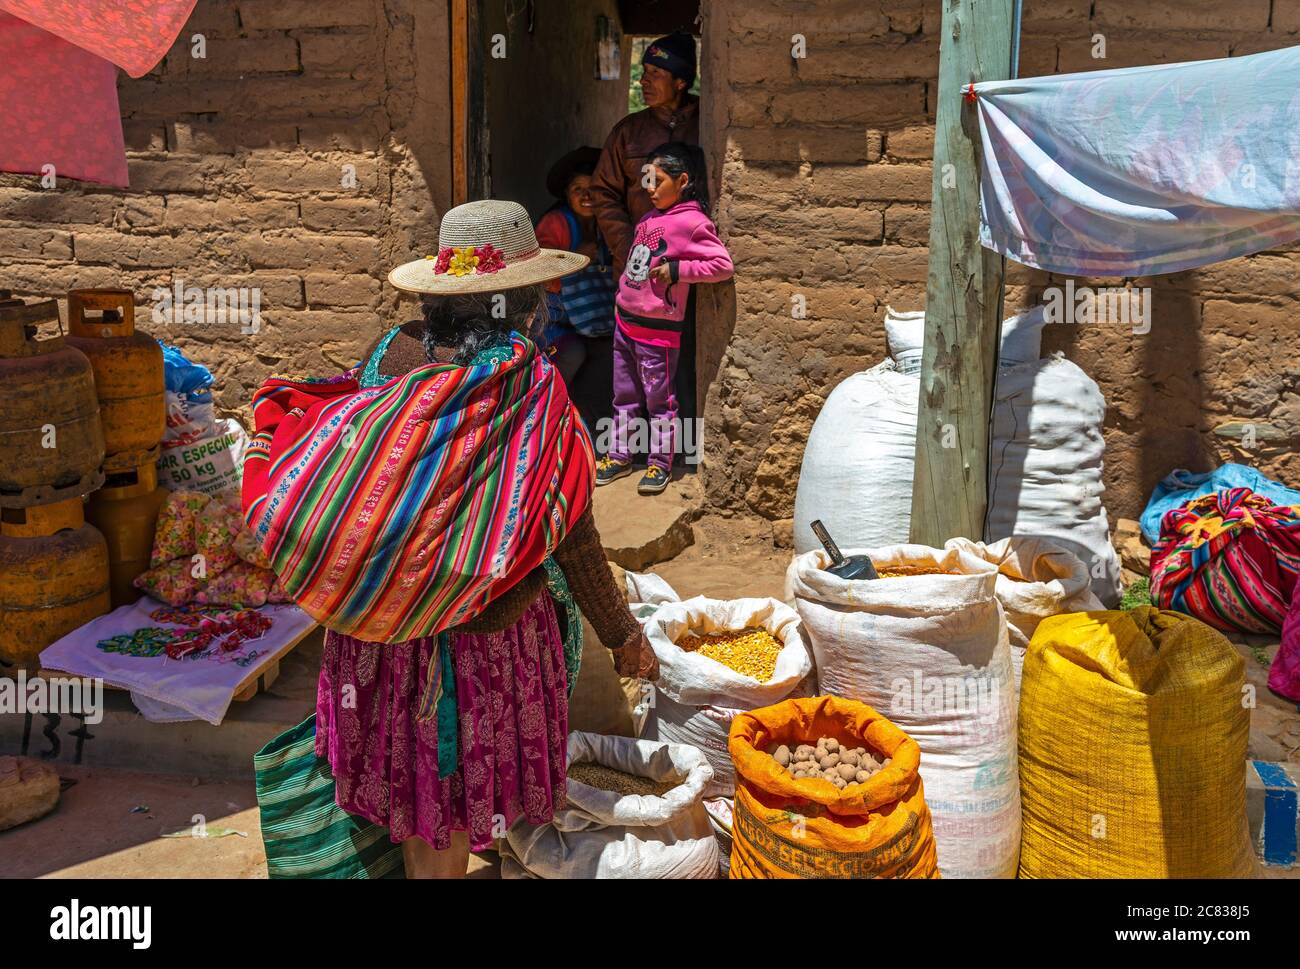 Indigene bolivianische Tarabuco Frau in traditioneller Kleidung und bunten Stoffbeutel auf dem lokalen Markt fragen nach Gemüsepreise, Sucre, Bolivien. Stockfoto